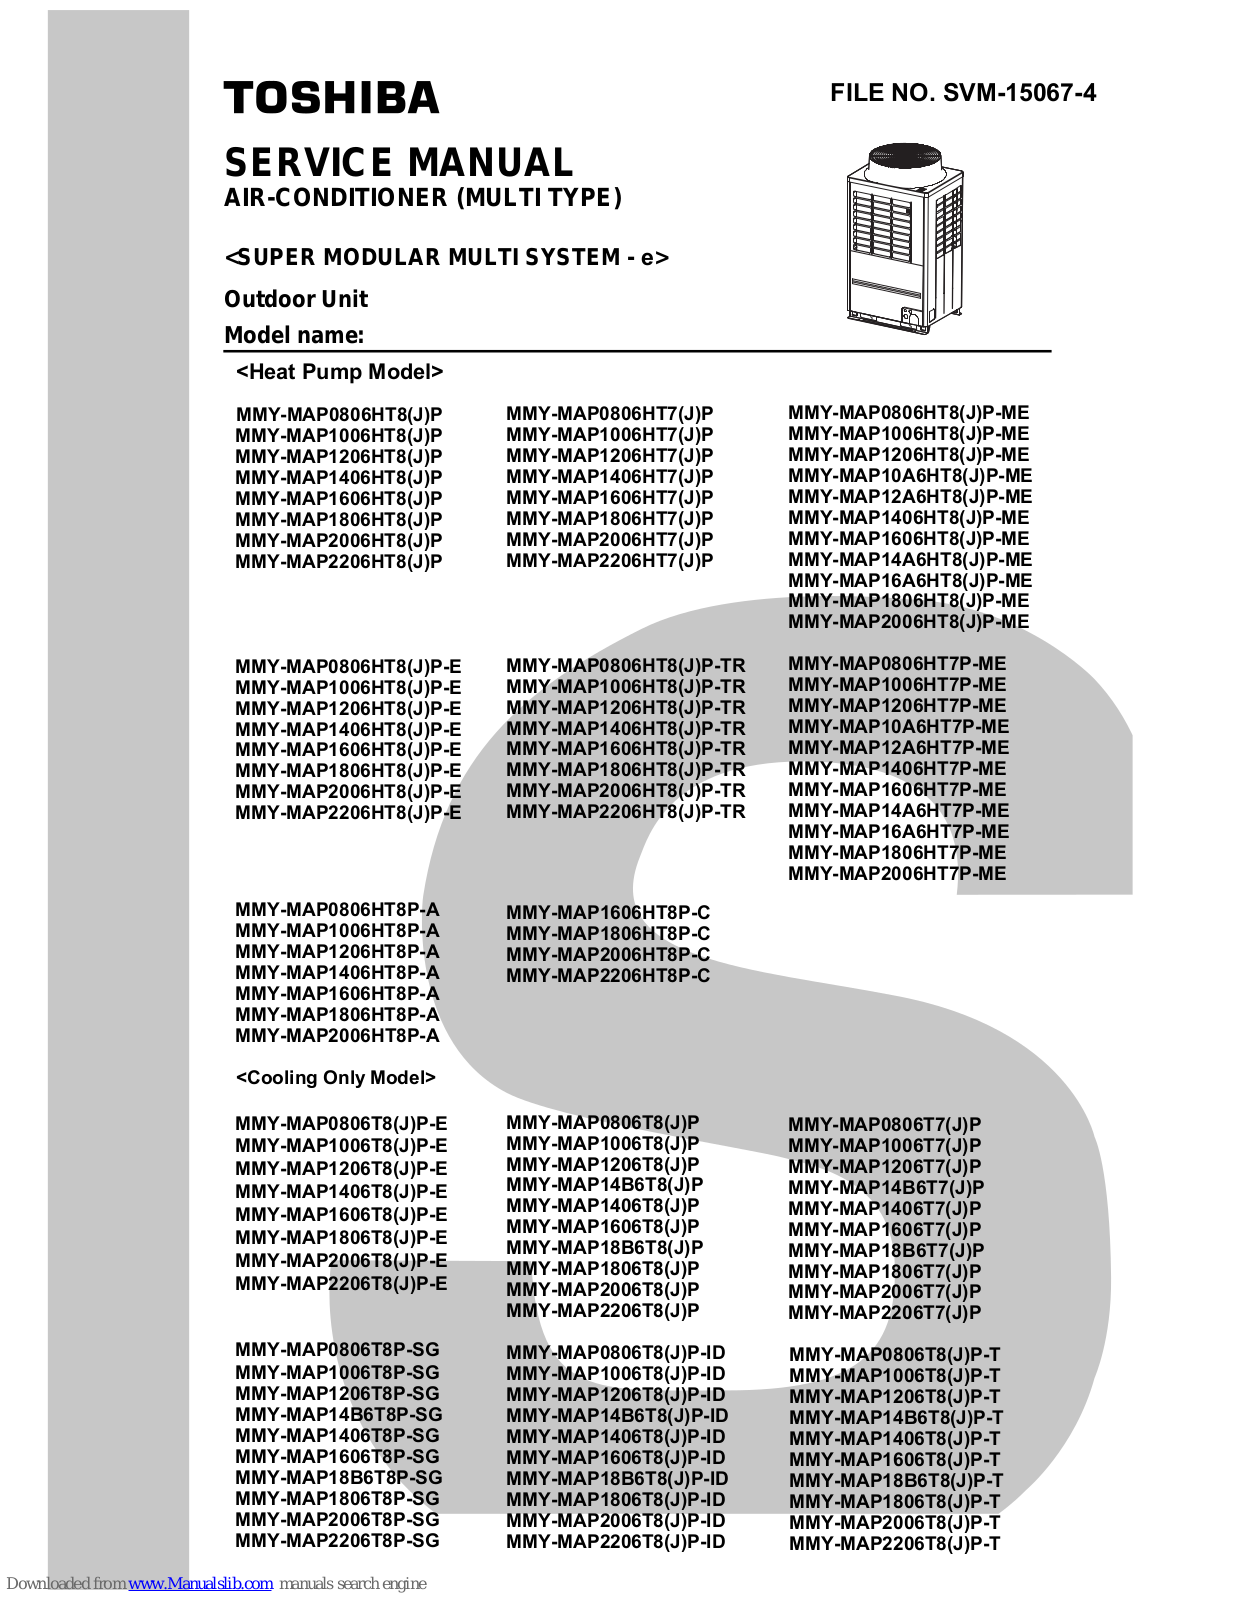 Toshiba MMY-MAP1006HT8P, MMY-MAP2206HT8P, MMY-MAP1806HT8P, MMY-MAP2006HT8P, MMY-MAP1206HT8P Service Manual